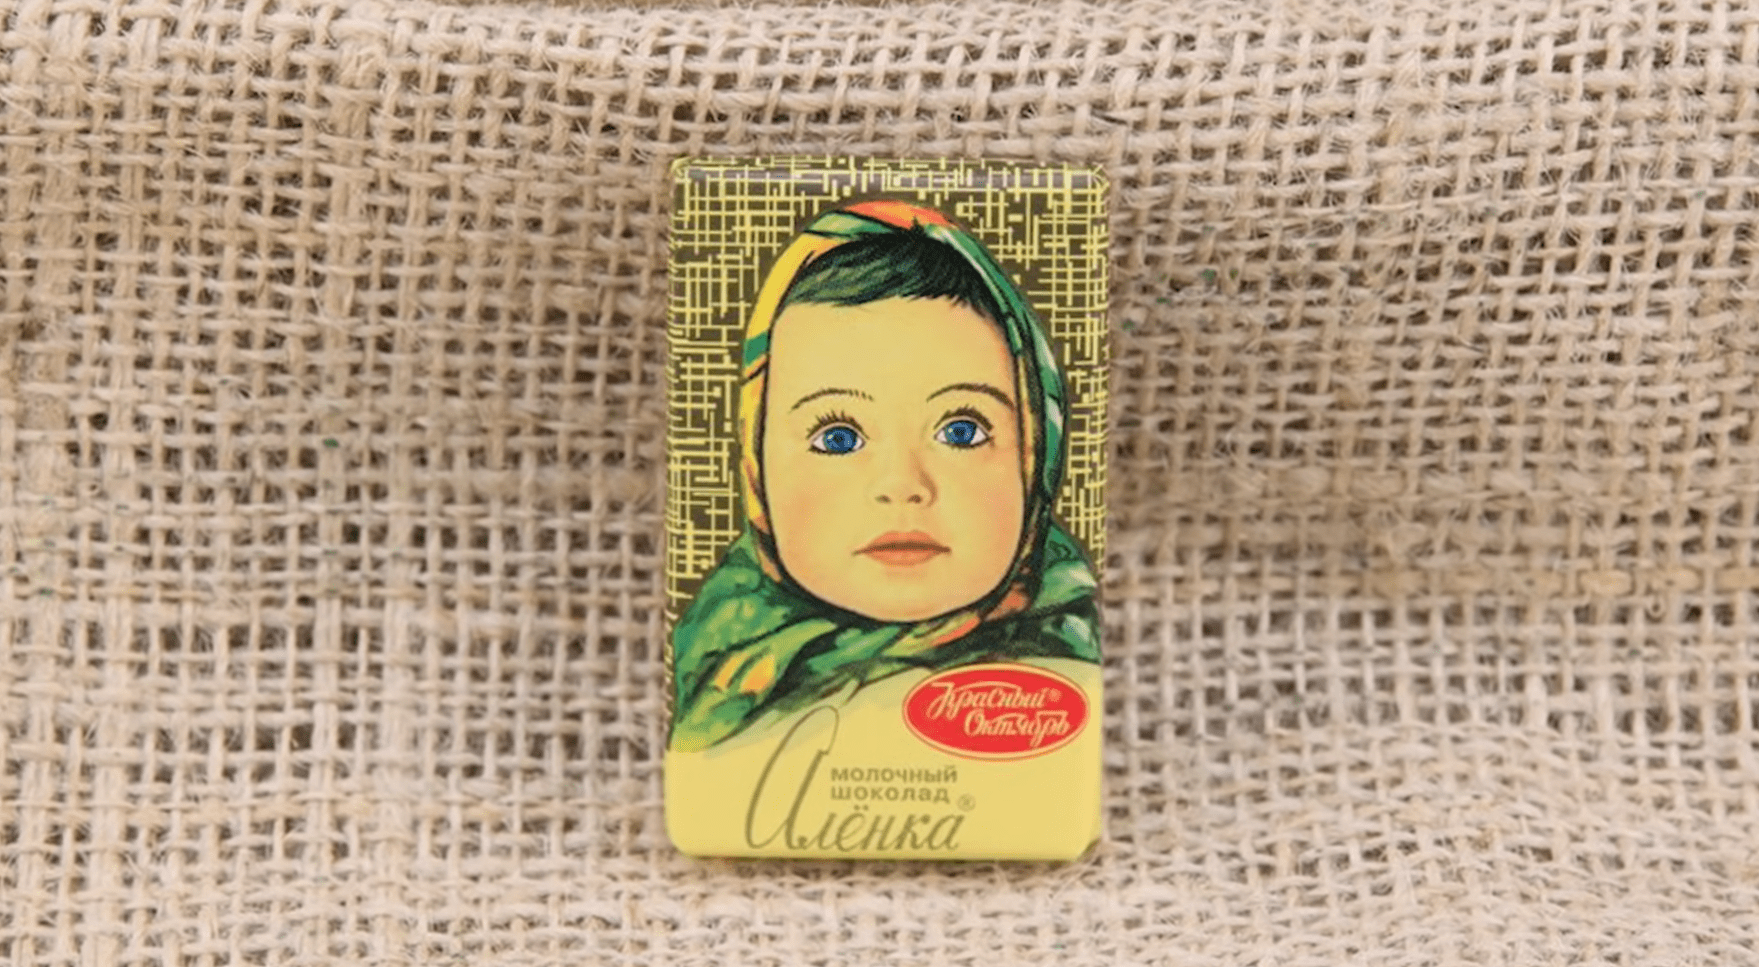 Шоколад «Аленка» от фабрики «Красный октябрь» признали халяльным